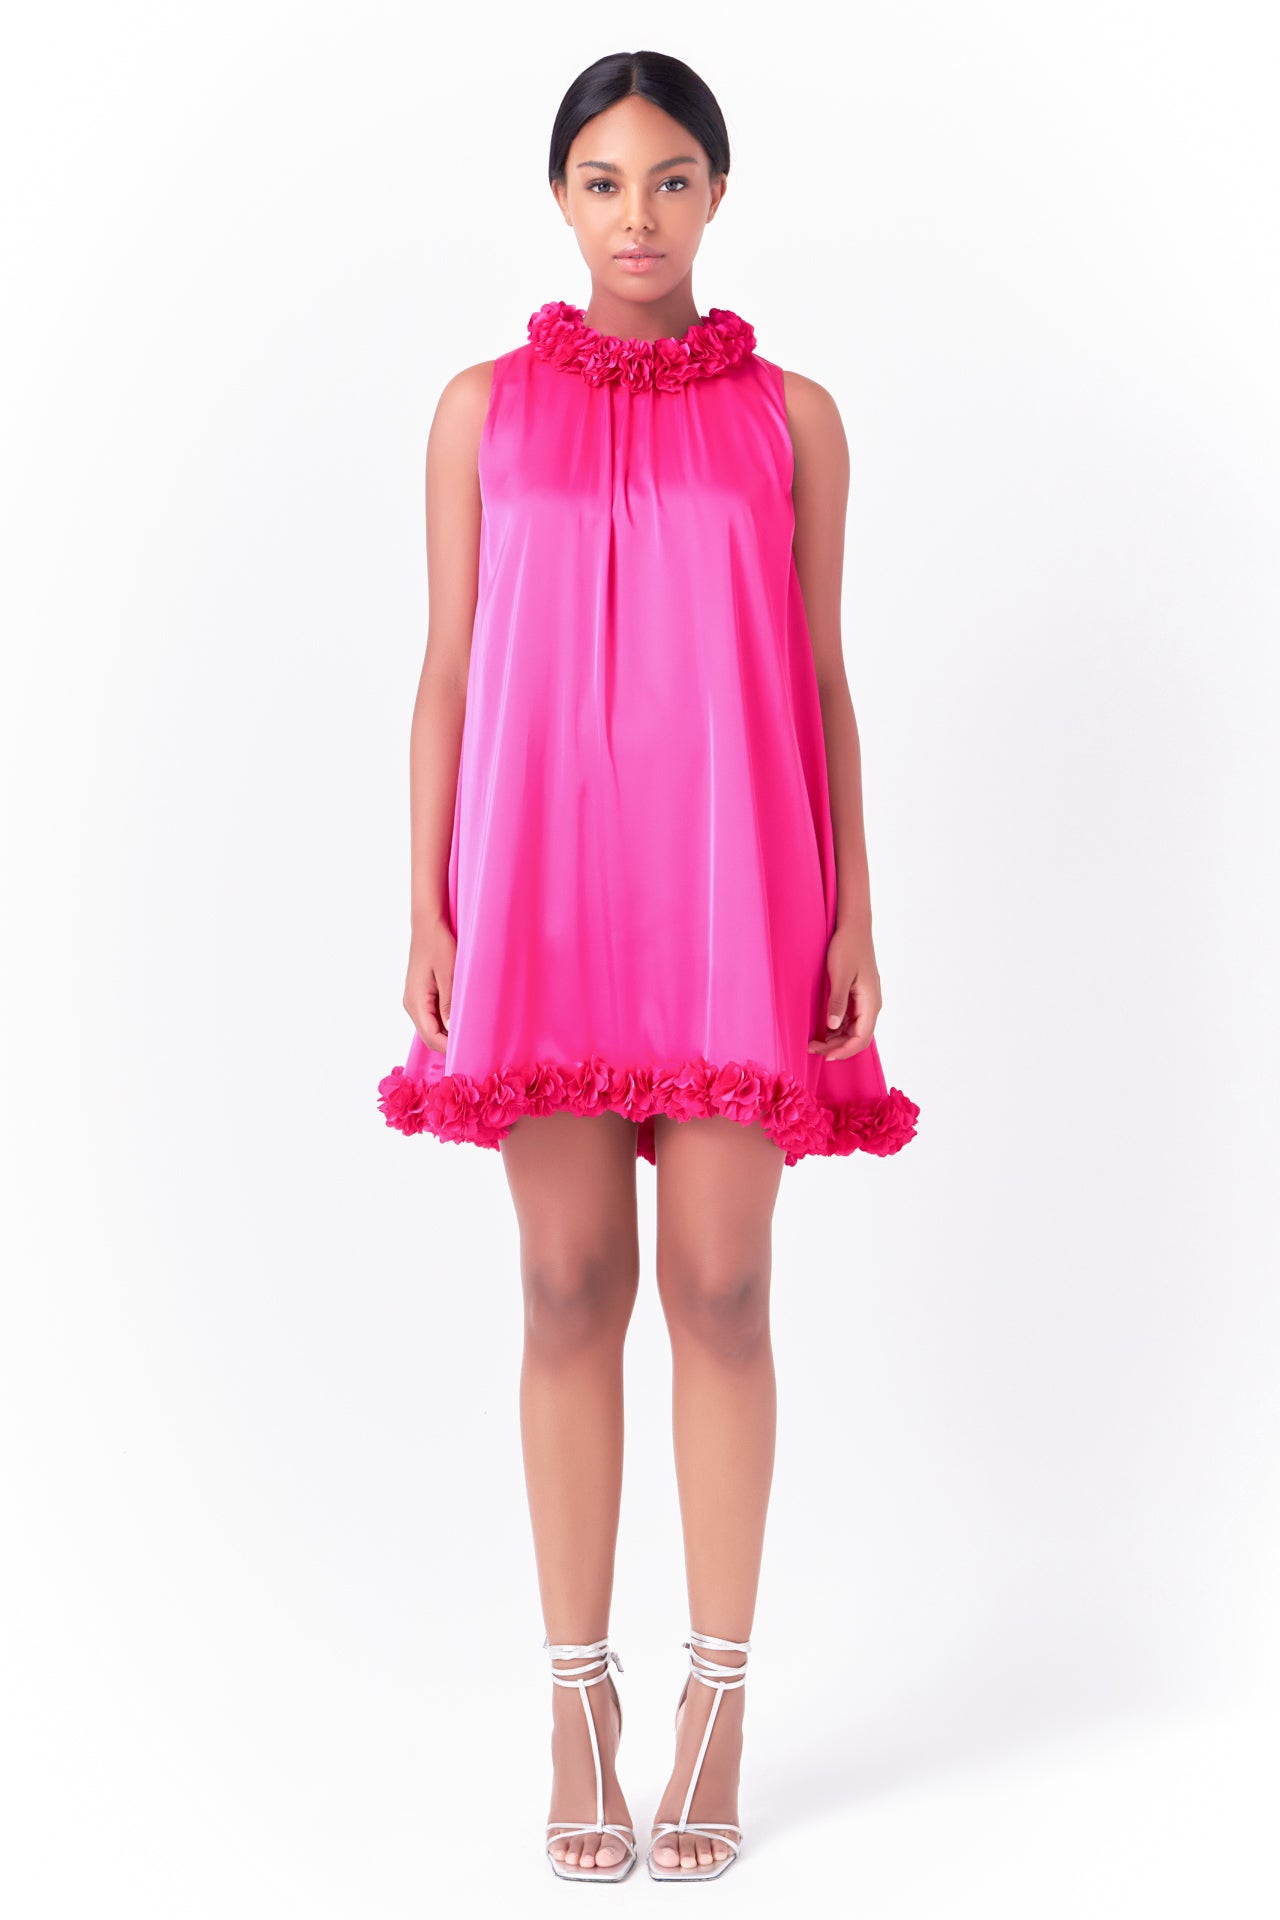 Rosette Mini Dress